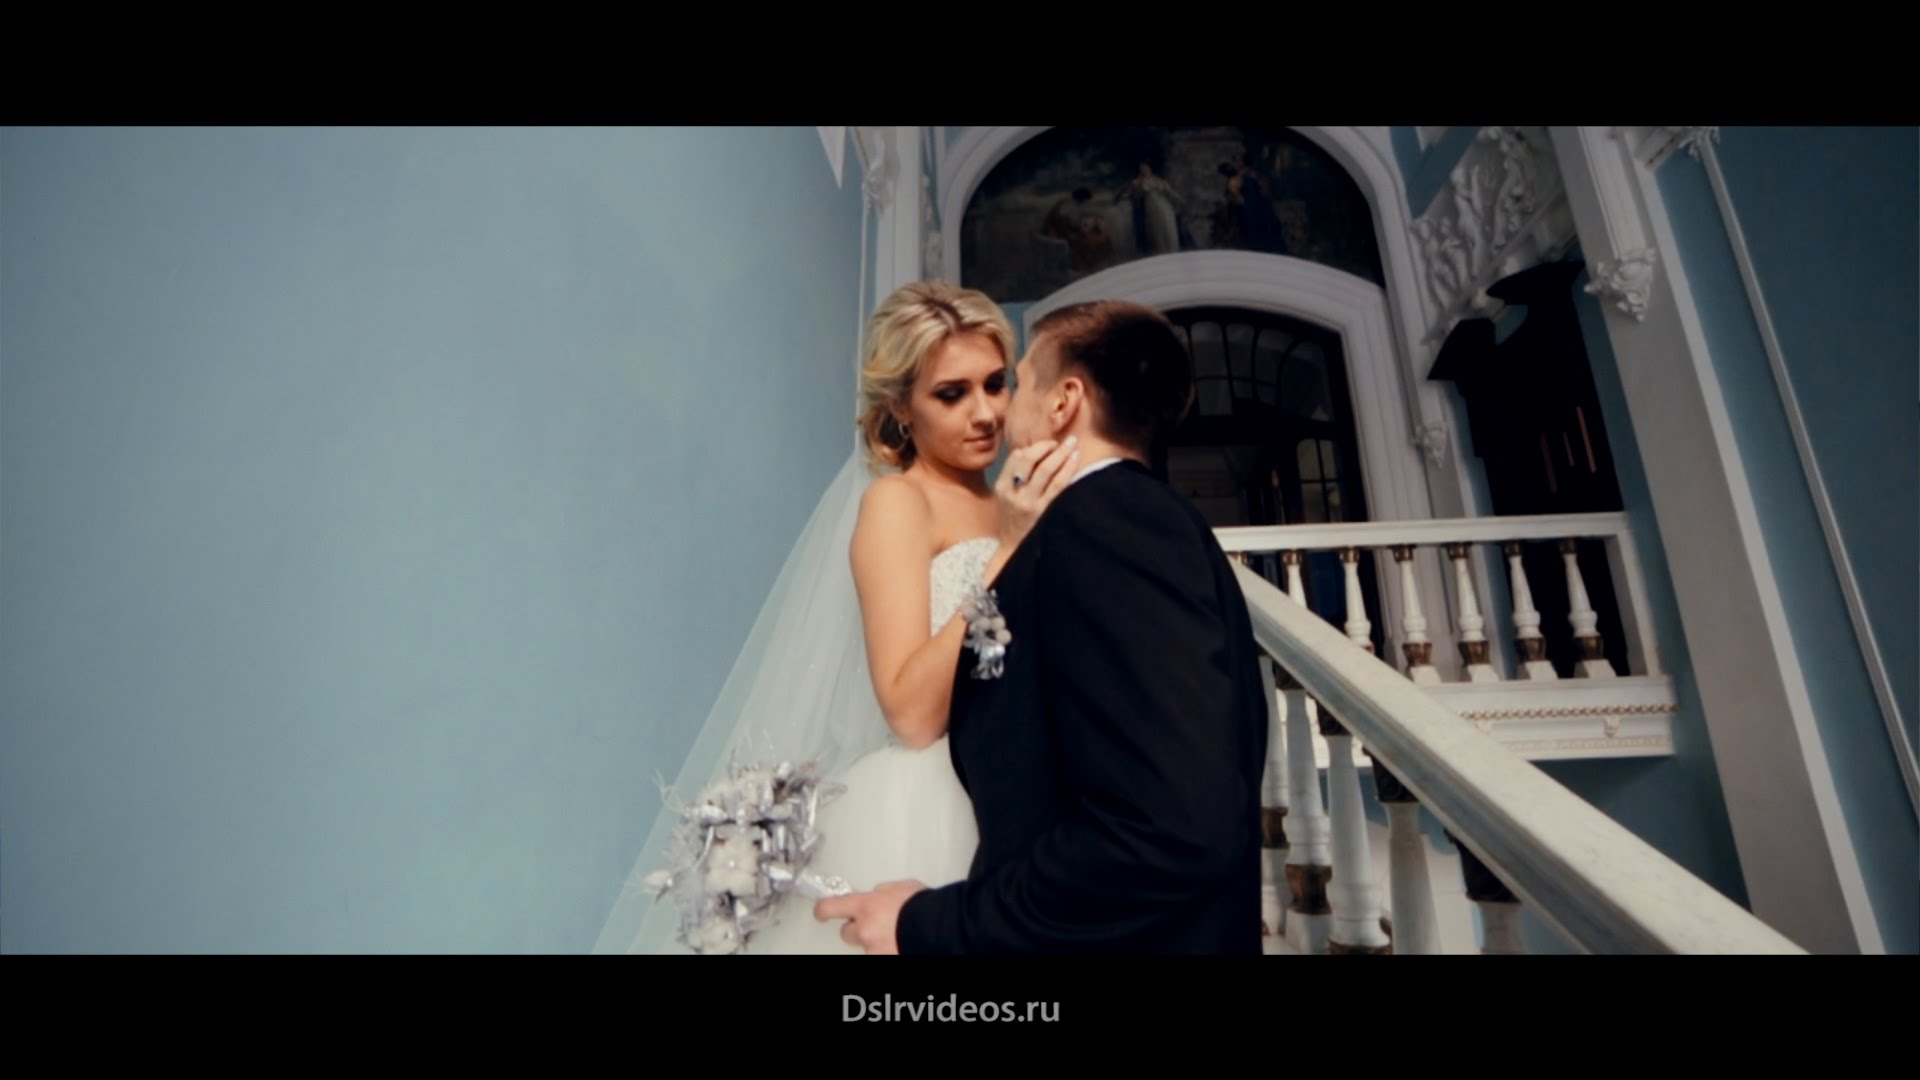 Как снимать свадьбу | Видеосъемка Свадьбы уроки